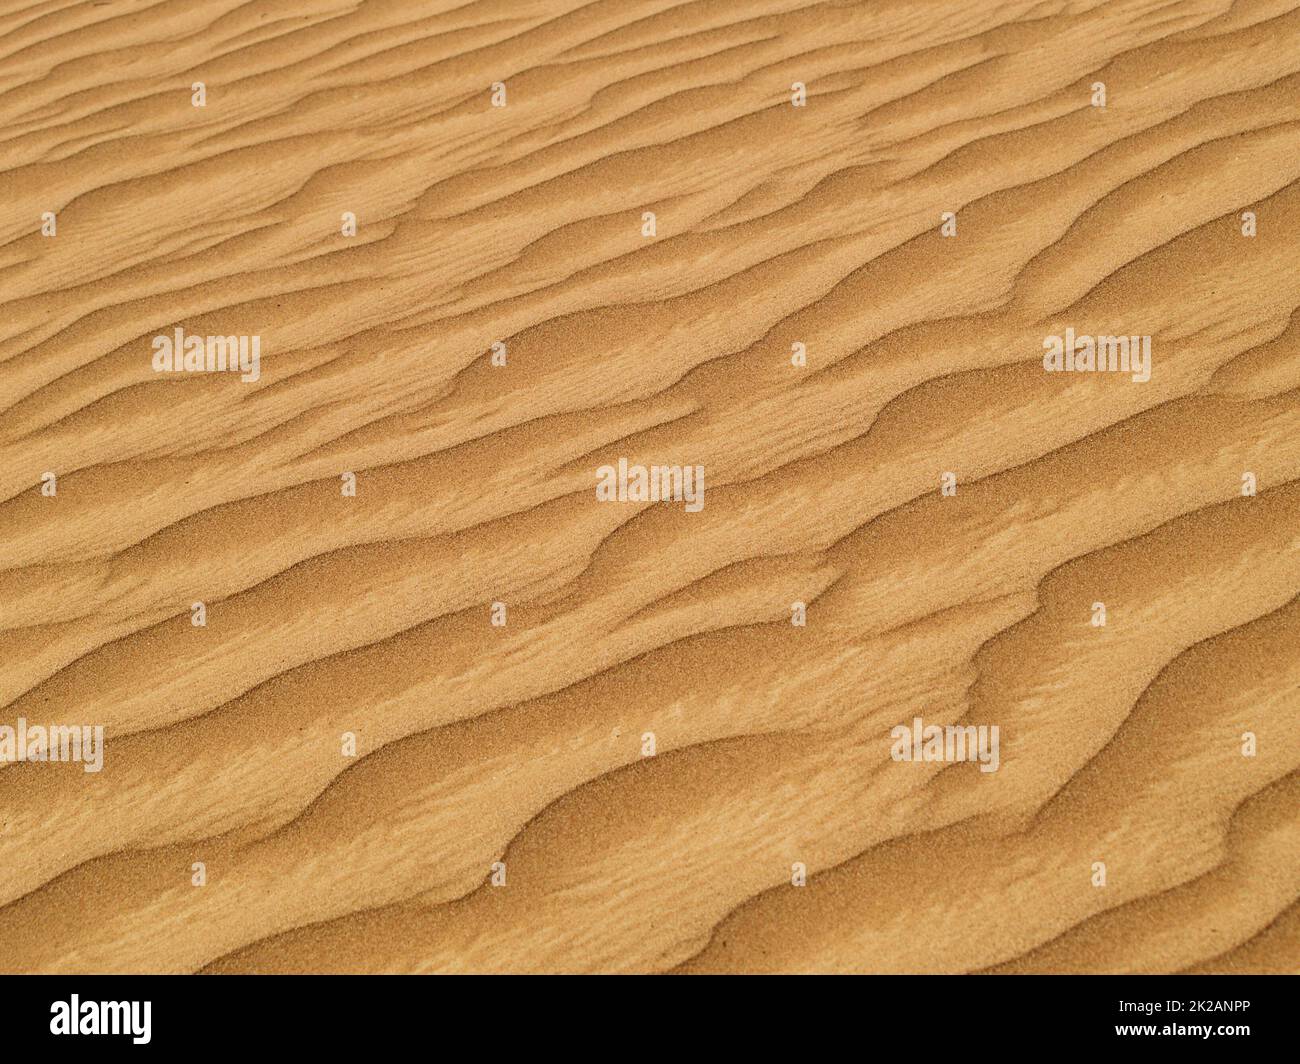 Sable du désert. Image rognée de sable désertique à texture ondulée. Banque D'Images